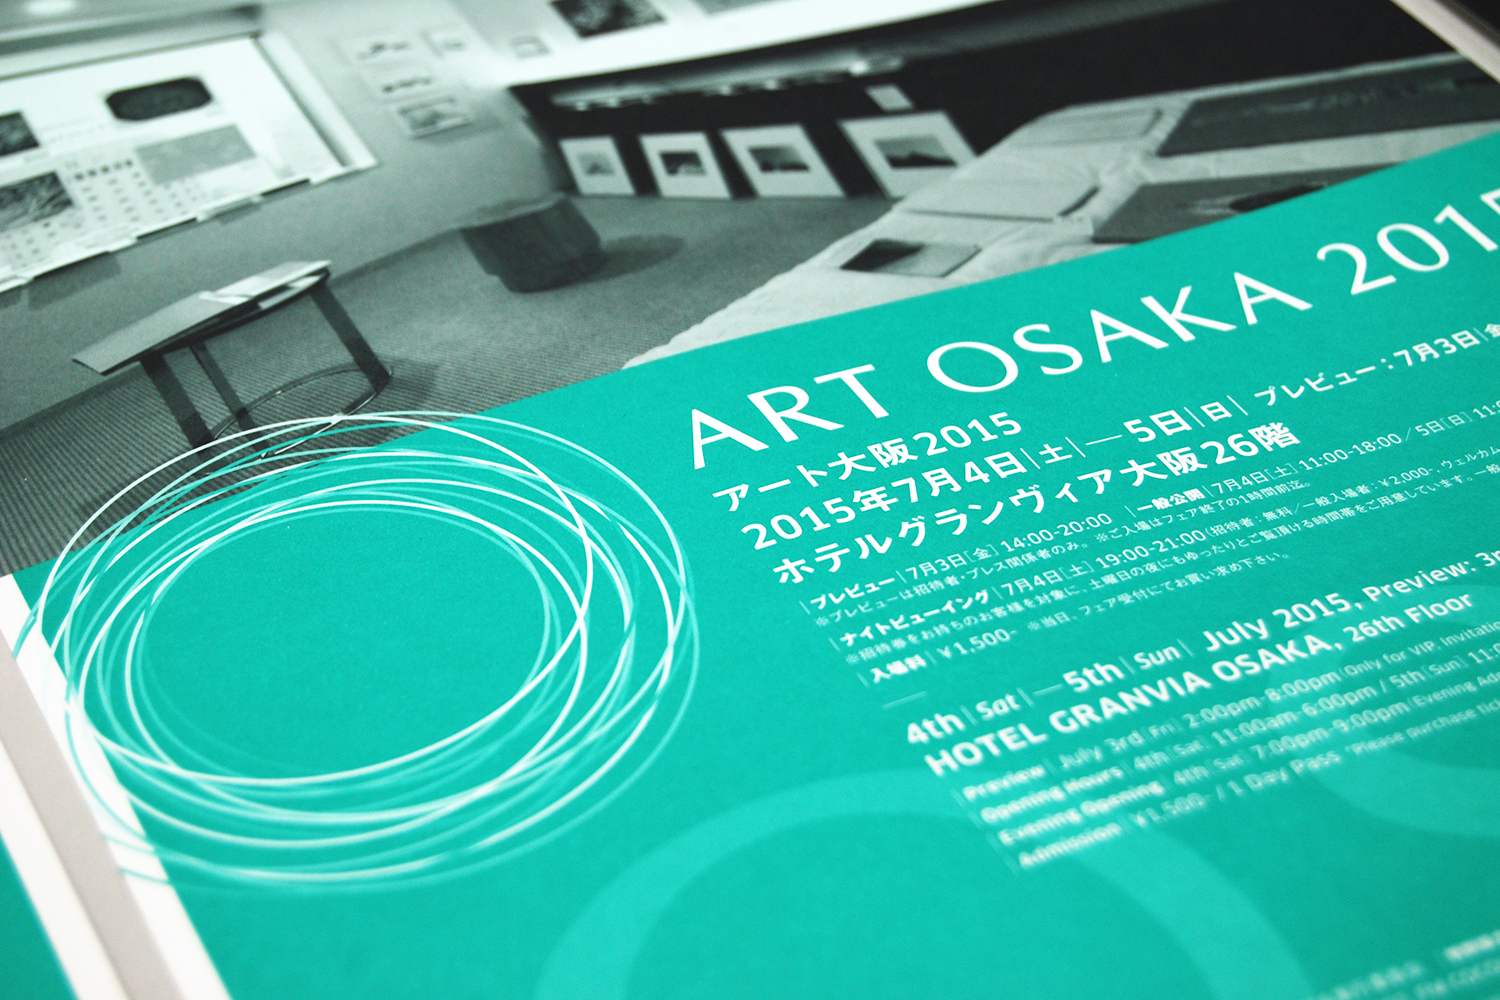 ART OSAKA 2015